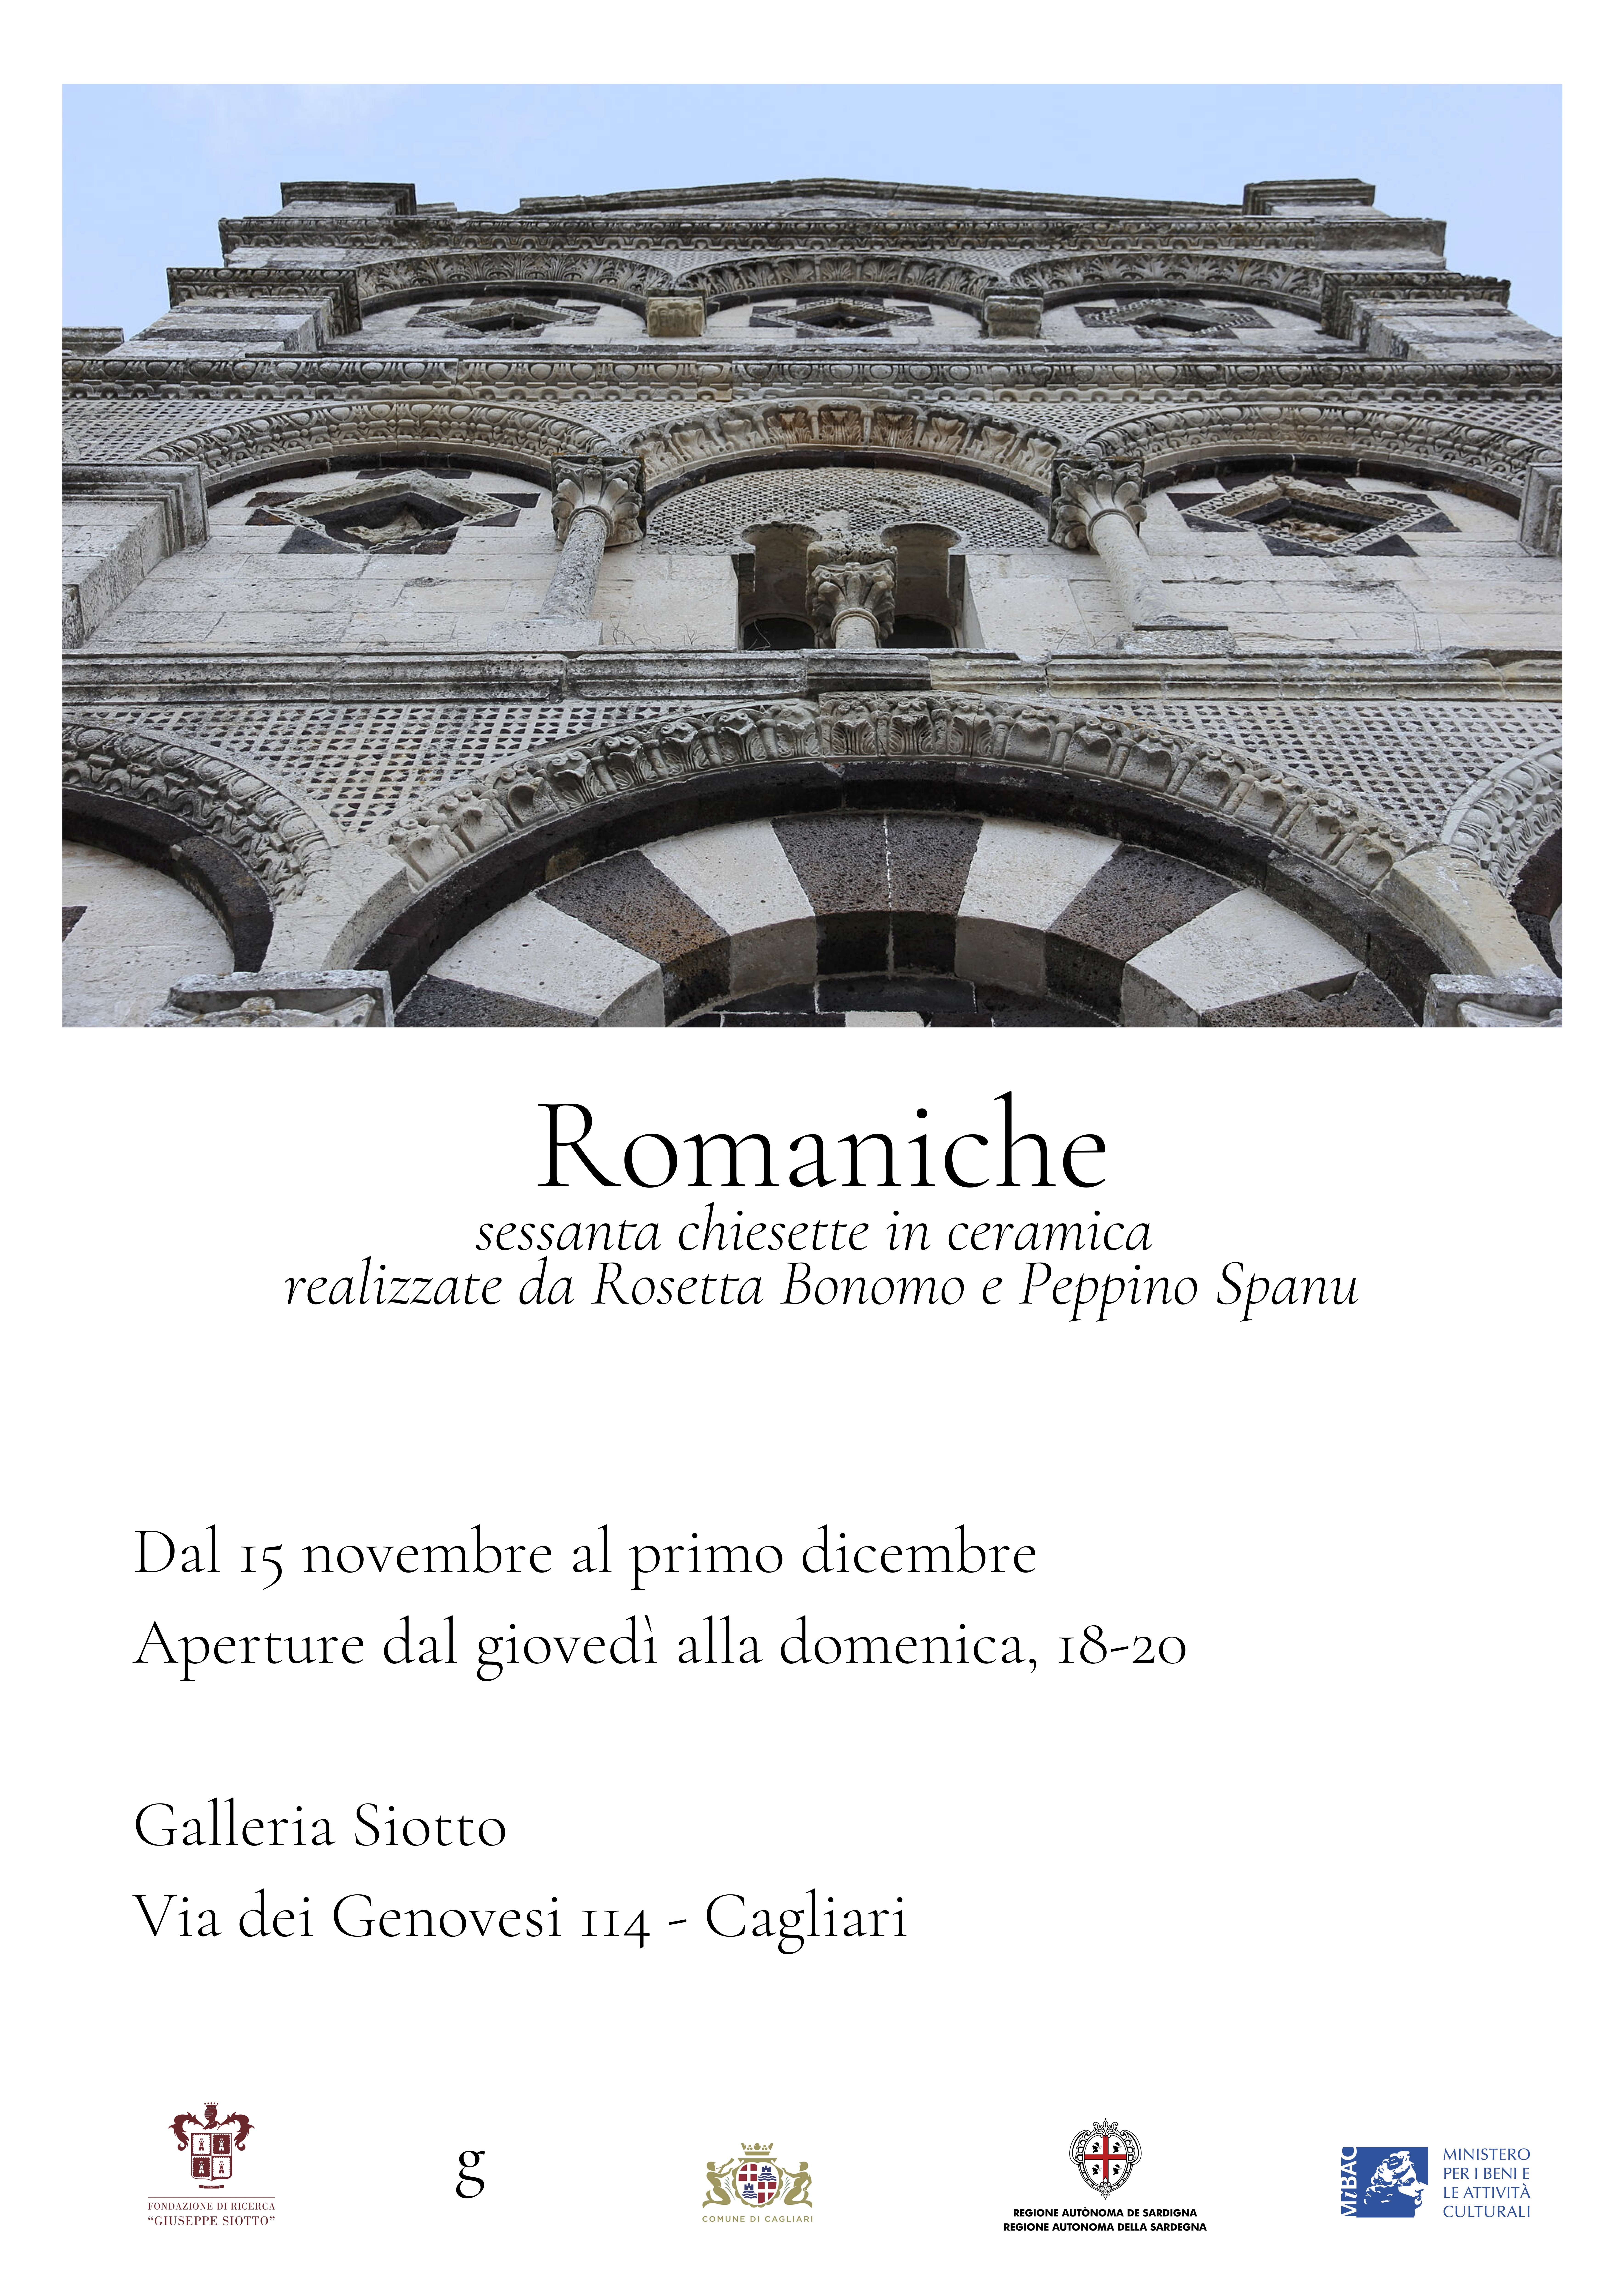 Scopri di più sull'articolo Romaniche. Mostra nella Galleria Siotto.